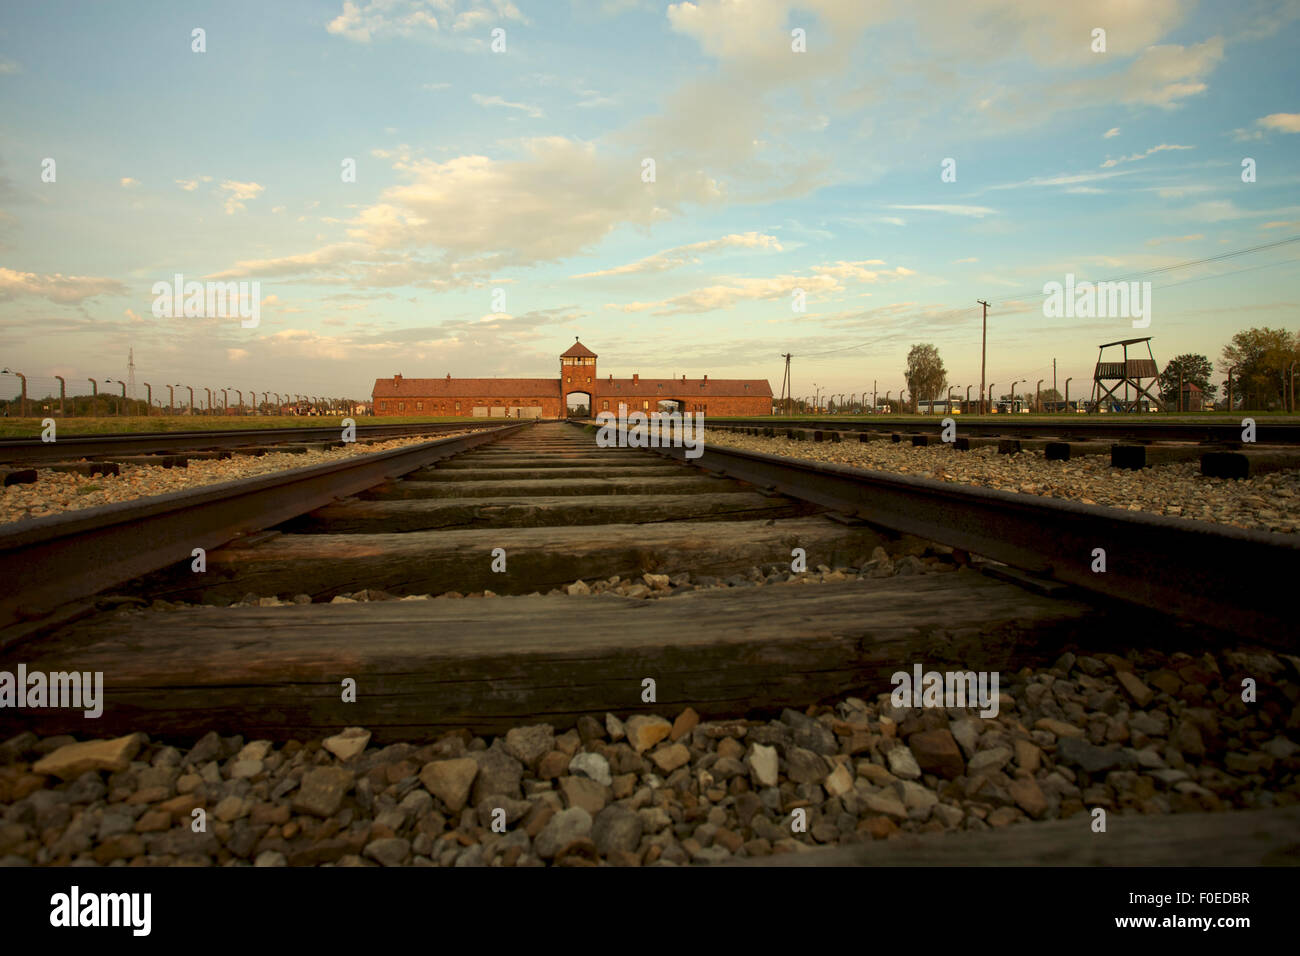 La voie du train arrivant à Auschwitz Birkenau camp de concentration, Pologne Banque D'Images